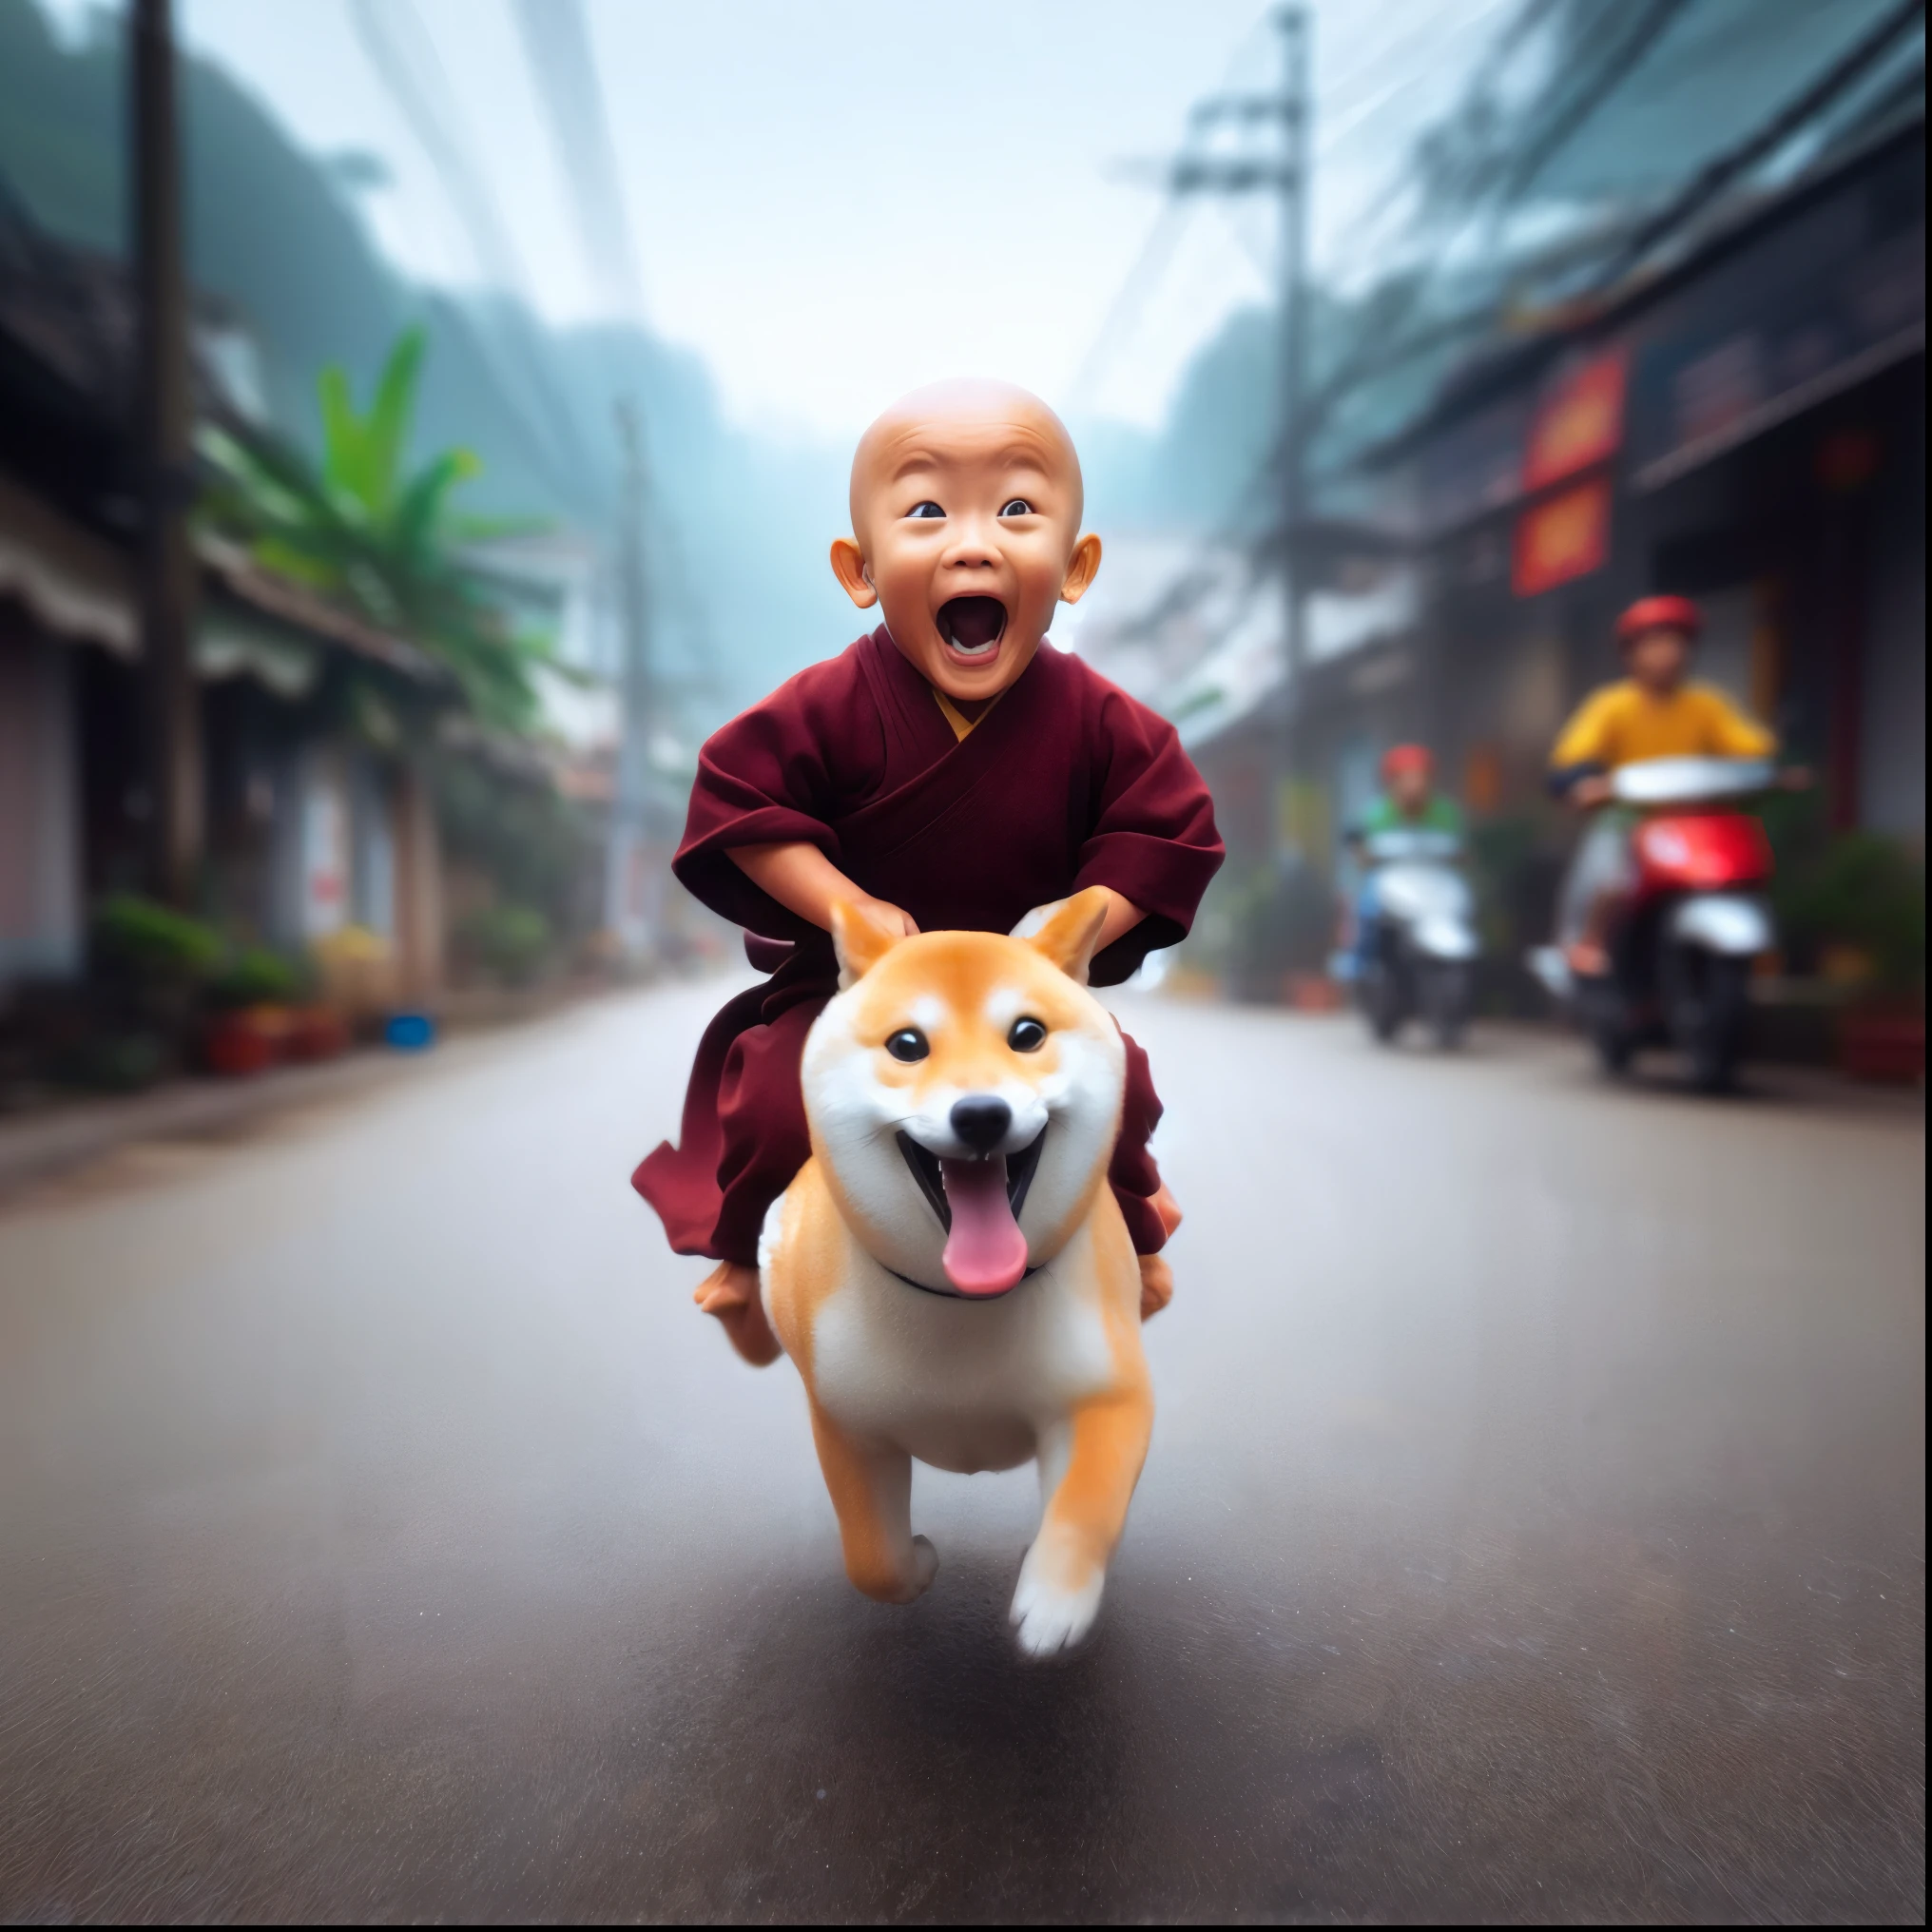 arafed image of a moine riding a dog on a street, bouddhiste, chien comme dieu, 2 1 st century moine, profondeur incroyable, doge, bouddhisme, Génial, avec son petit chien hyperactif, oeuvre d&#39;art dans le style de guweiz, adorable peinture numérique, moine, il est très content, pure joie, inspiré par Shiba Kōkan